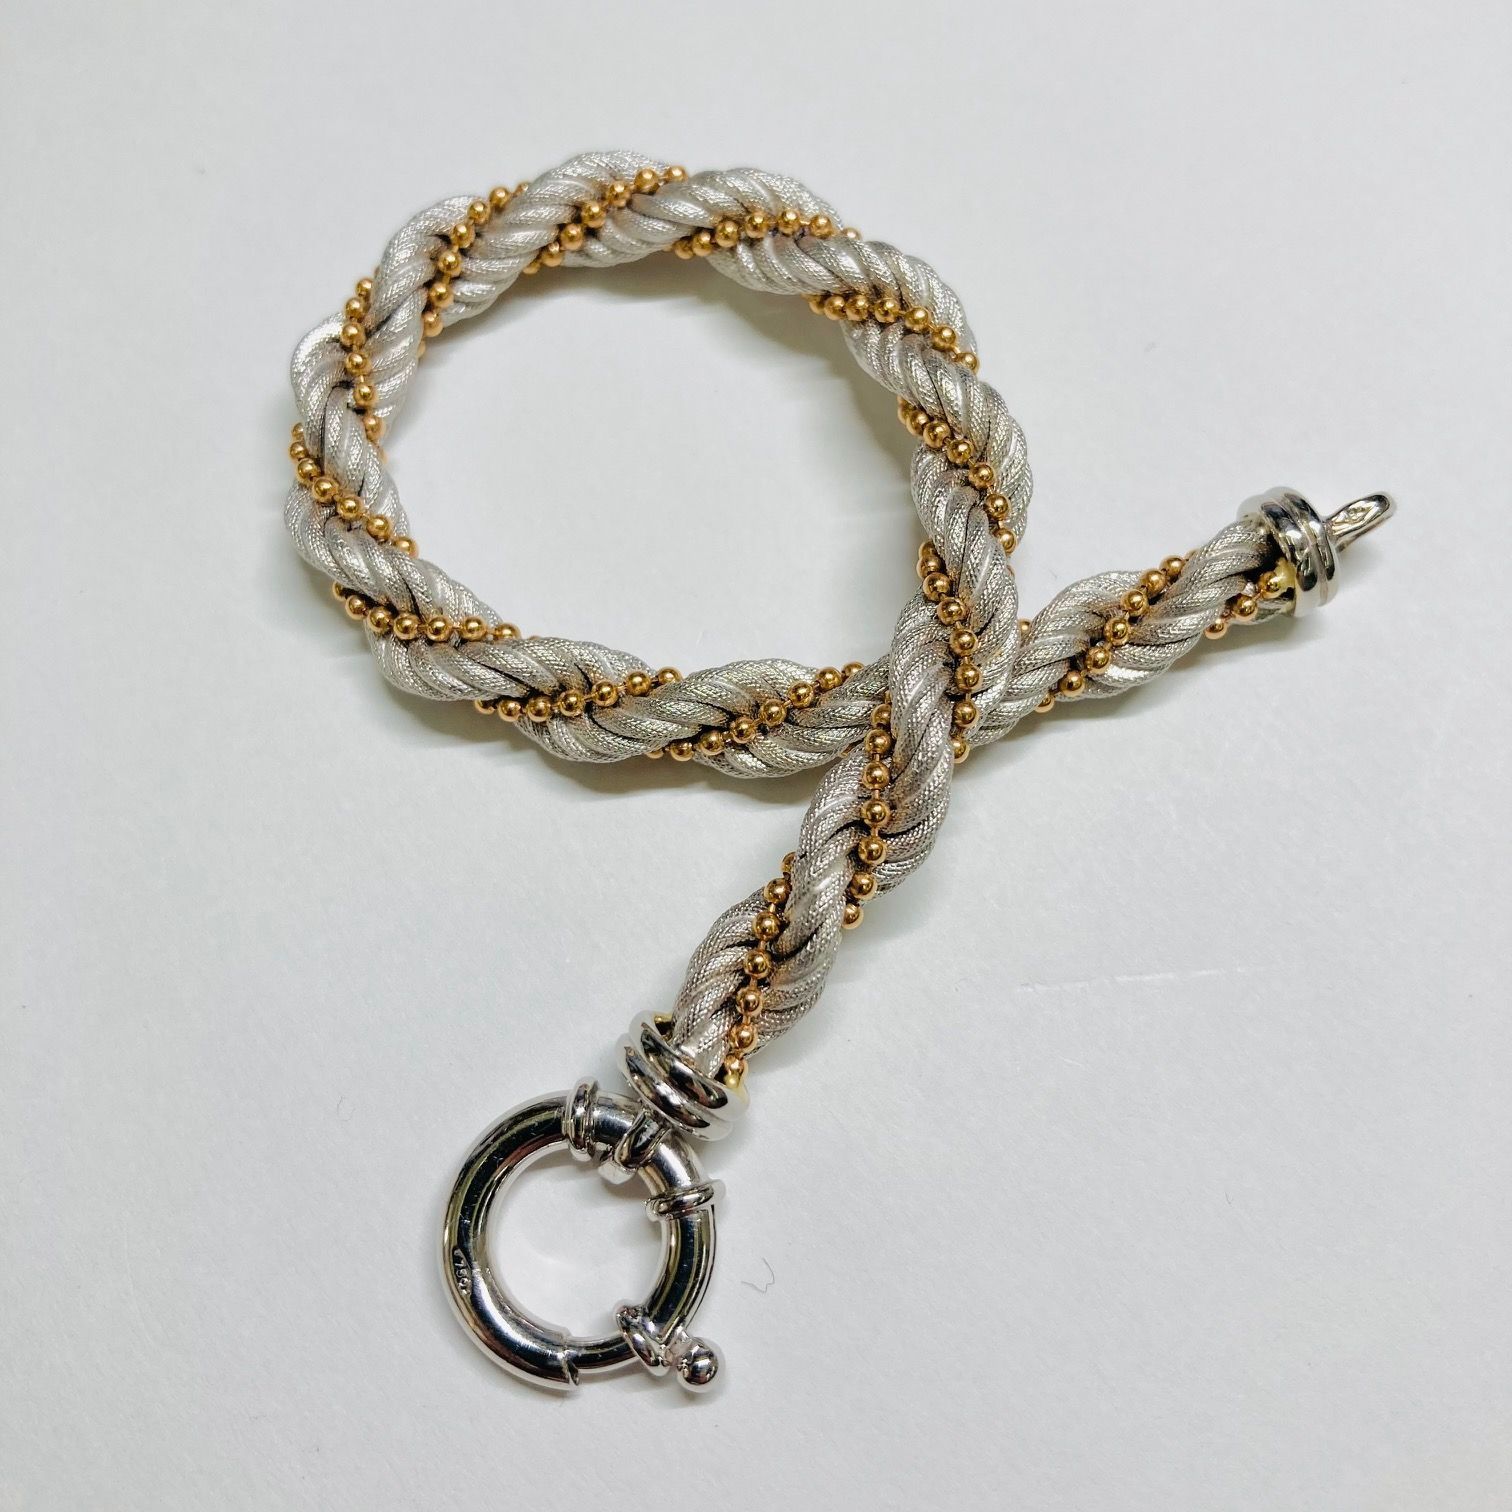 コンビ18金のロープ型ブレスレット18cm